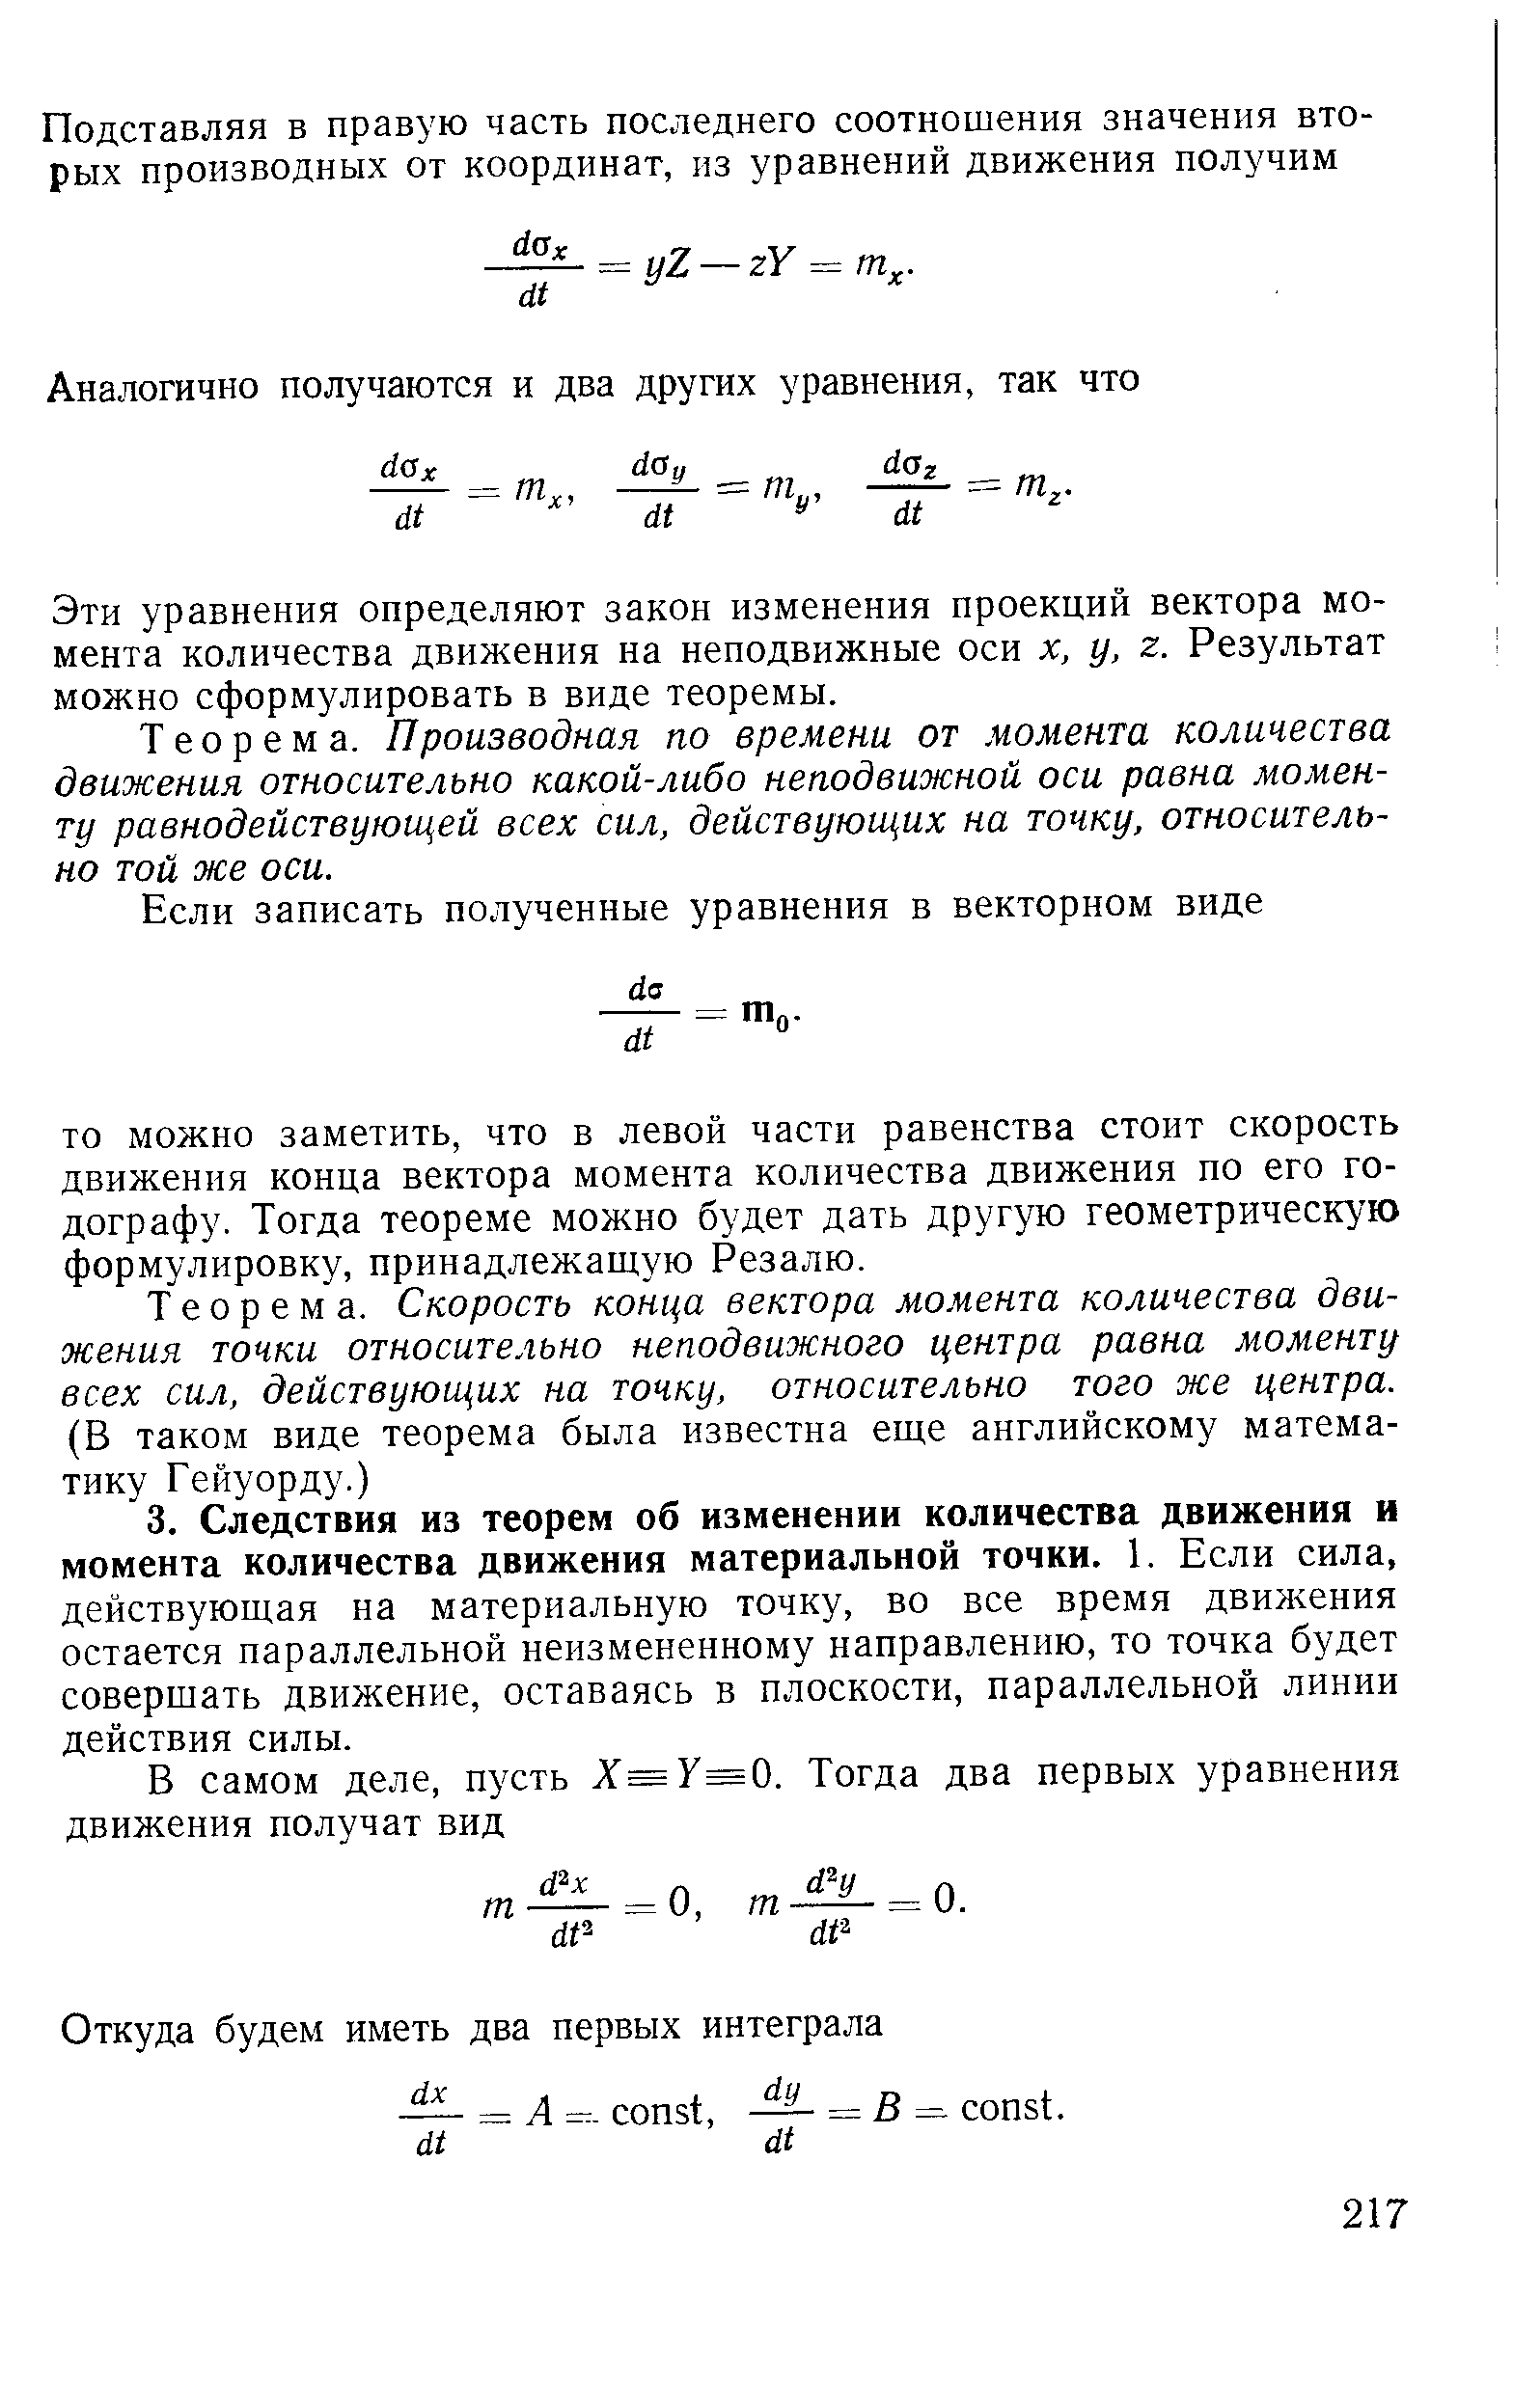 Эти уравнения определяют закон изменения проекций вектора момента количества движения на неподвижные оси х, у, г. Результат можно сформулировать в виде теоремы.
